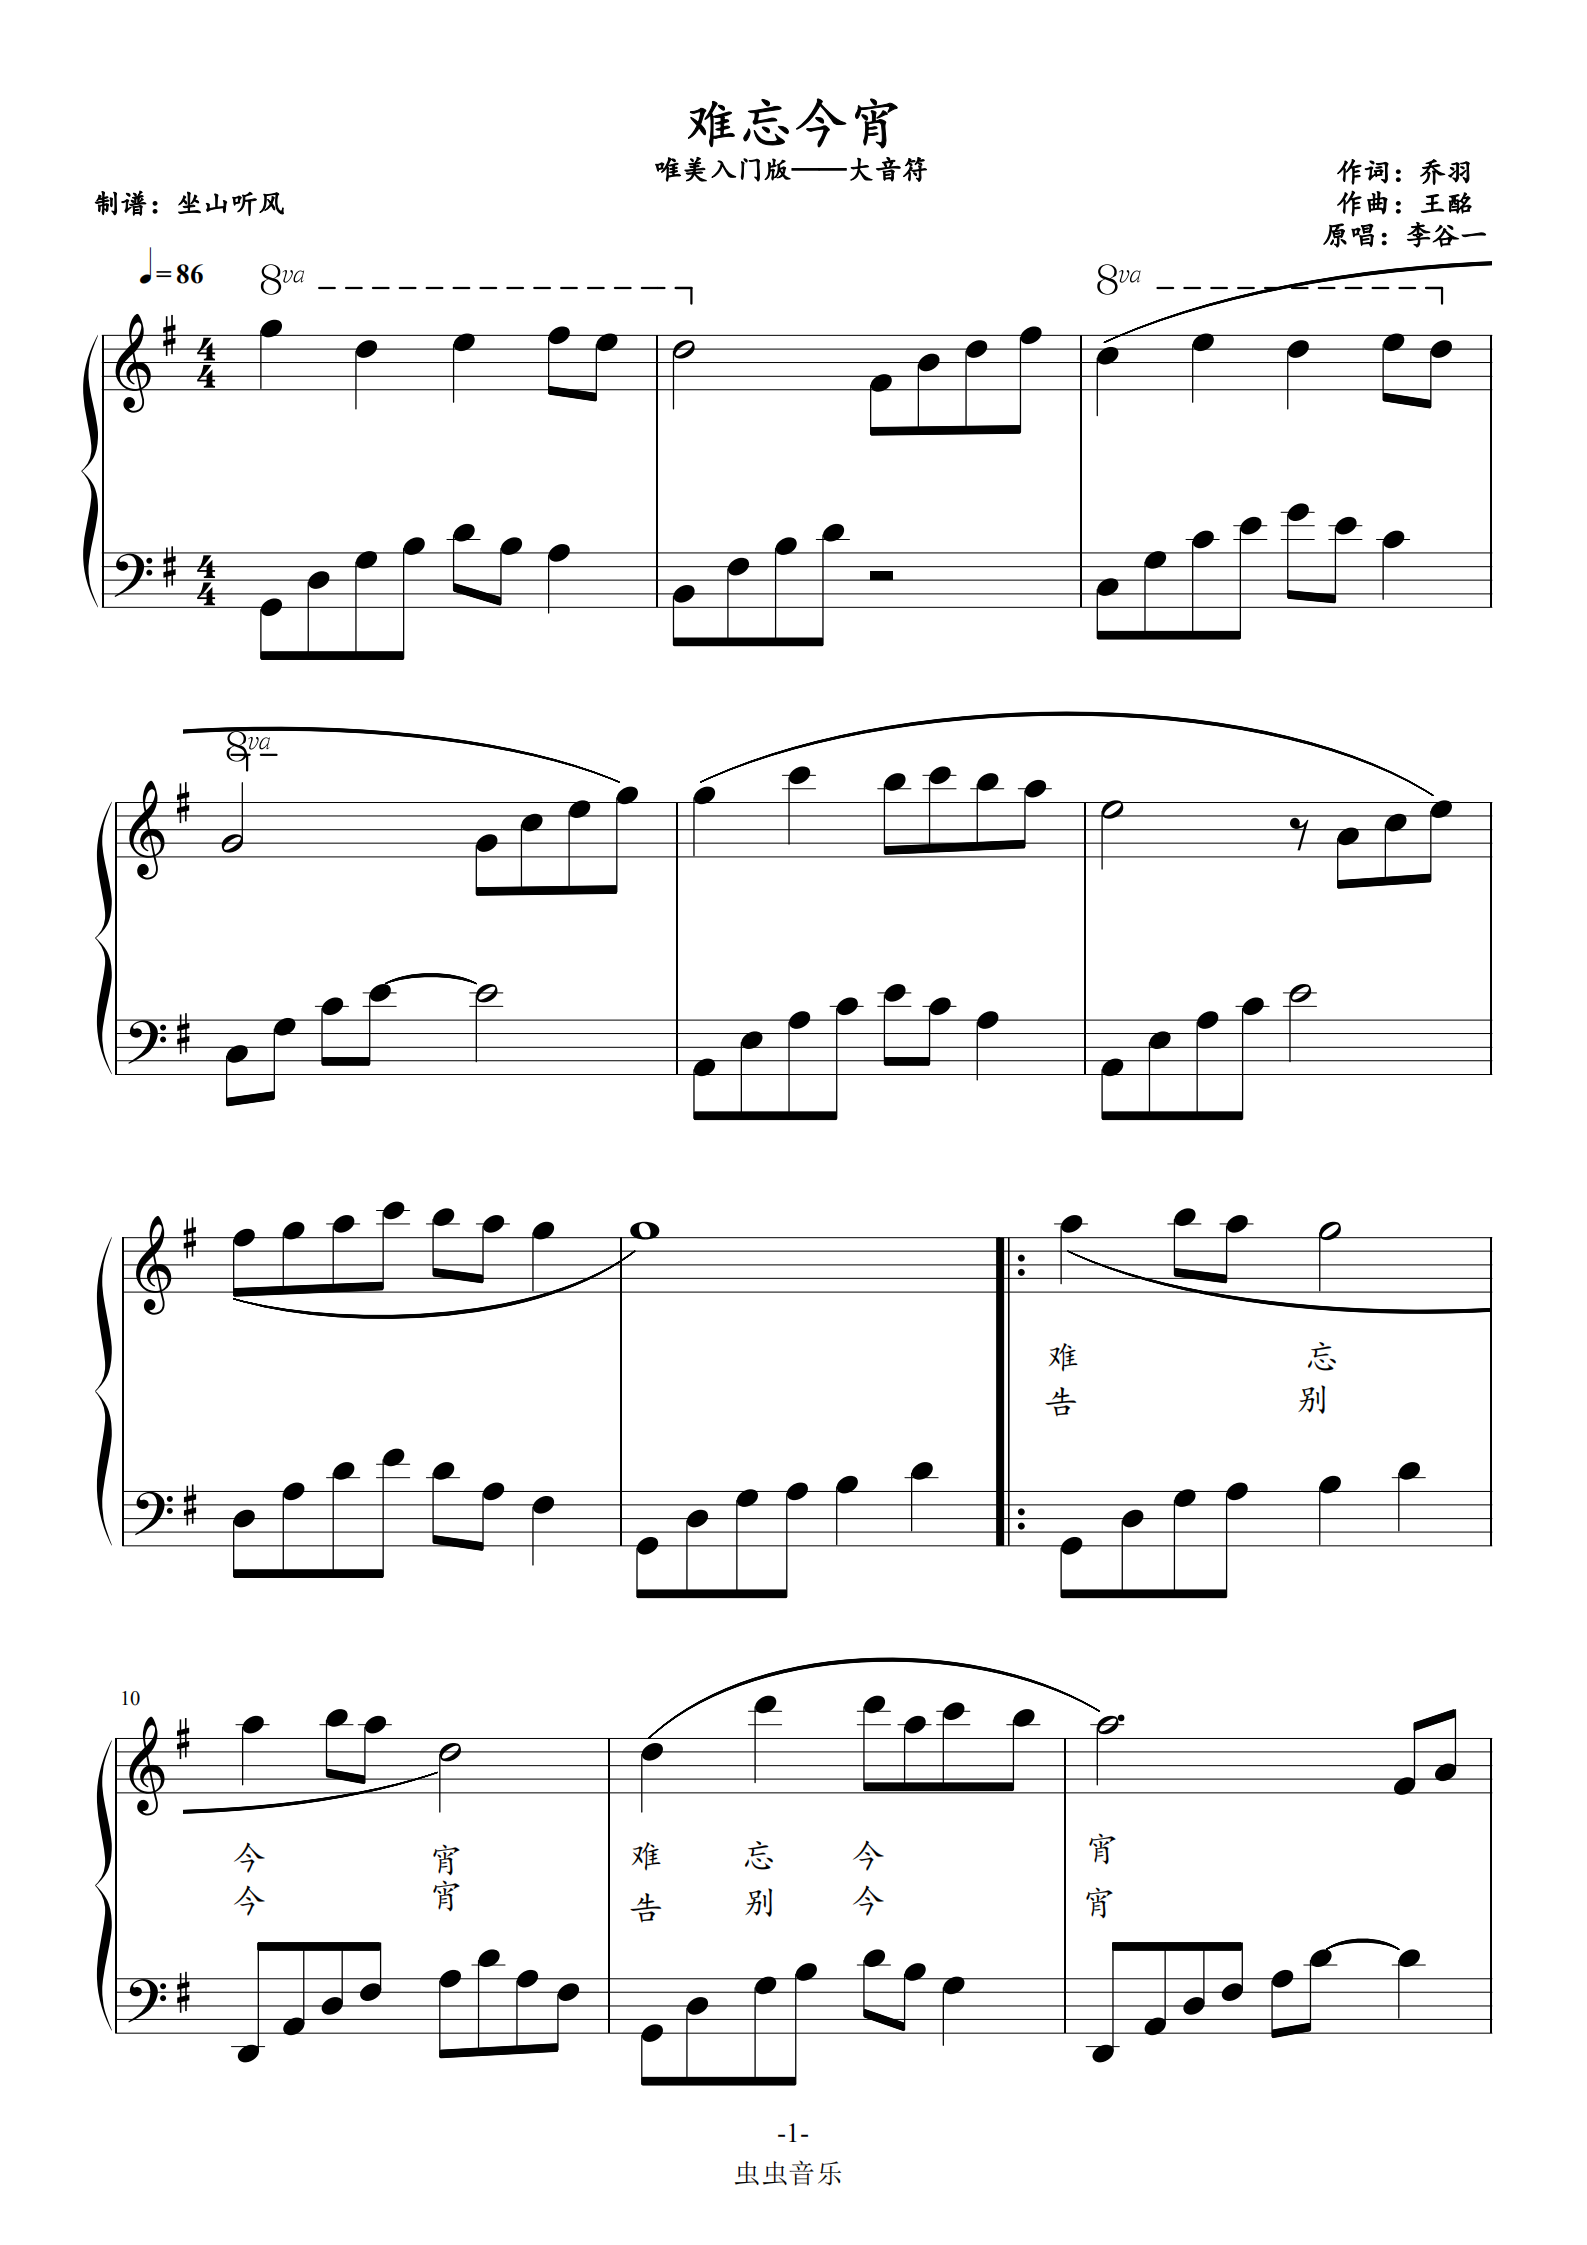 风山钢琴曲谱完整版图片